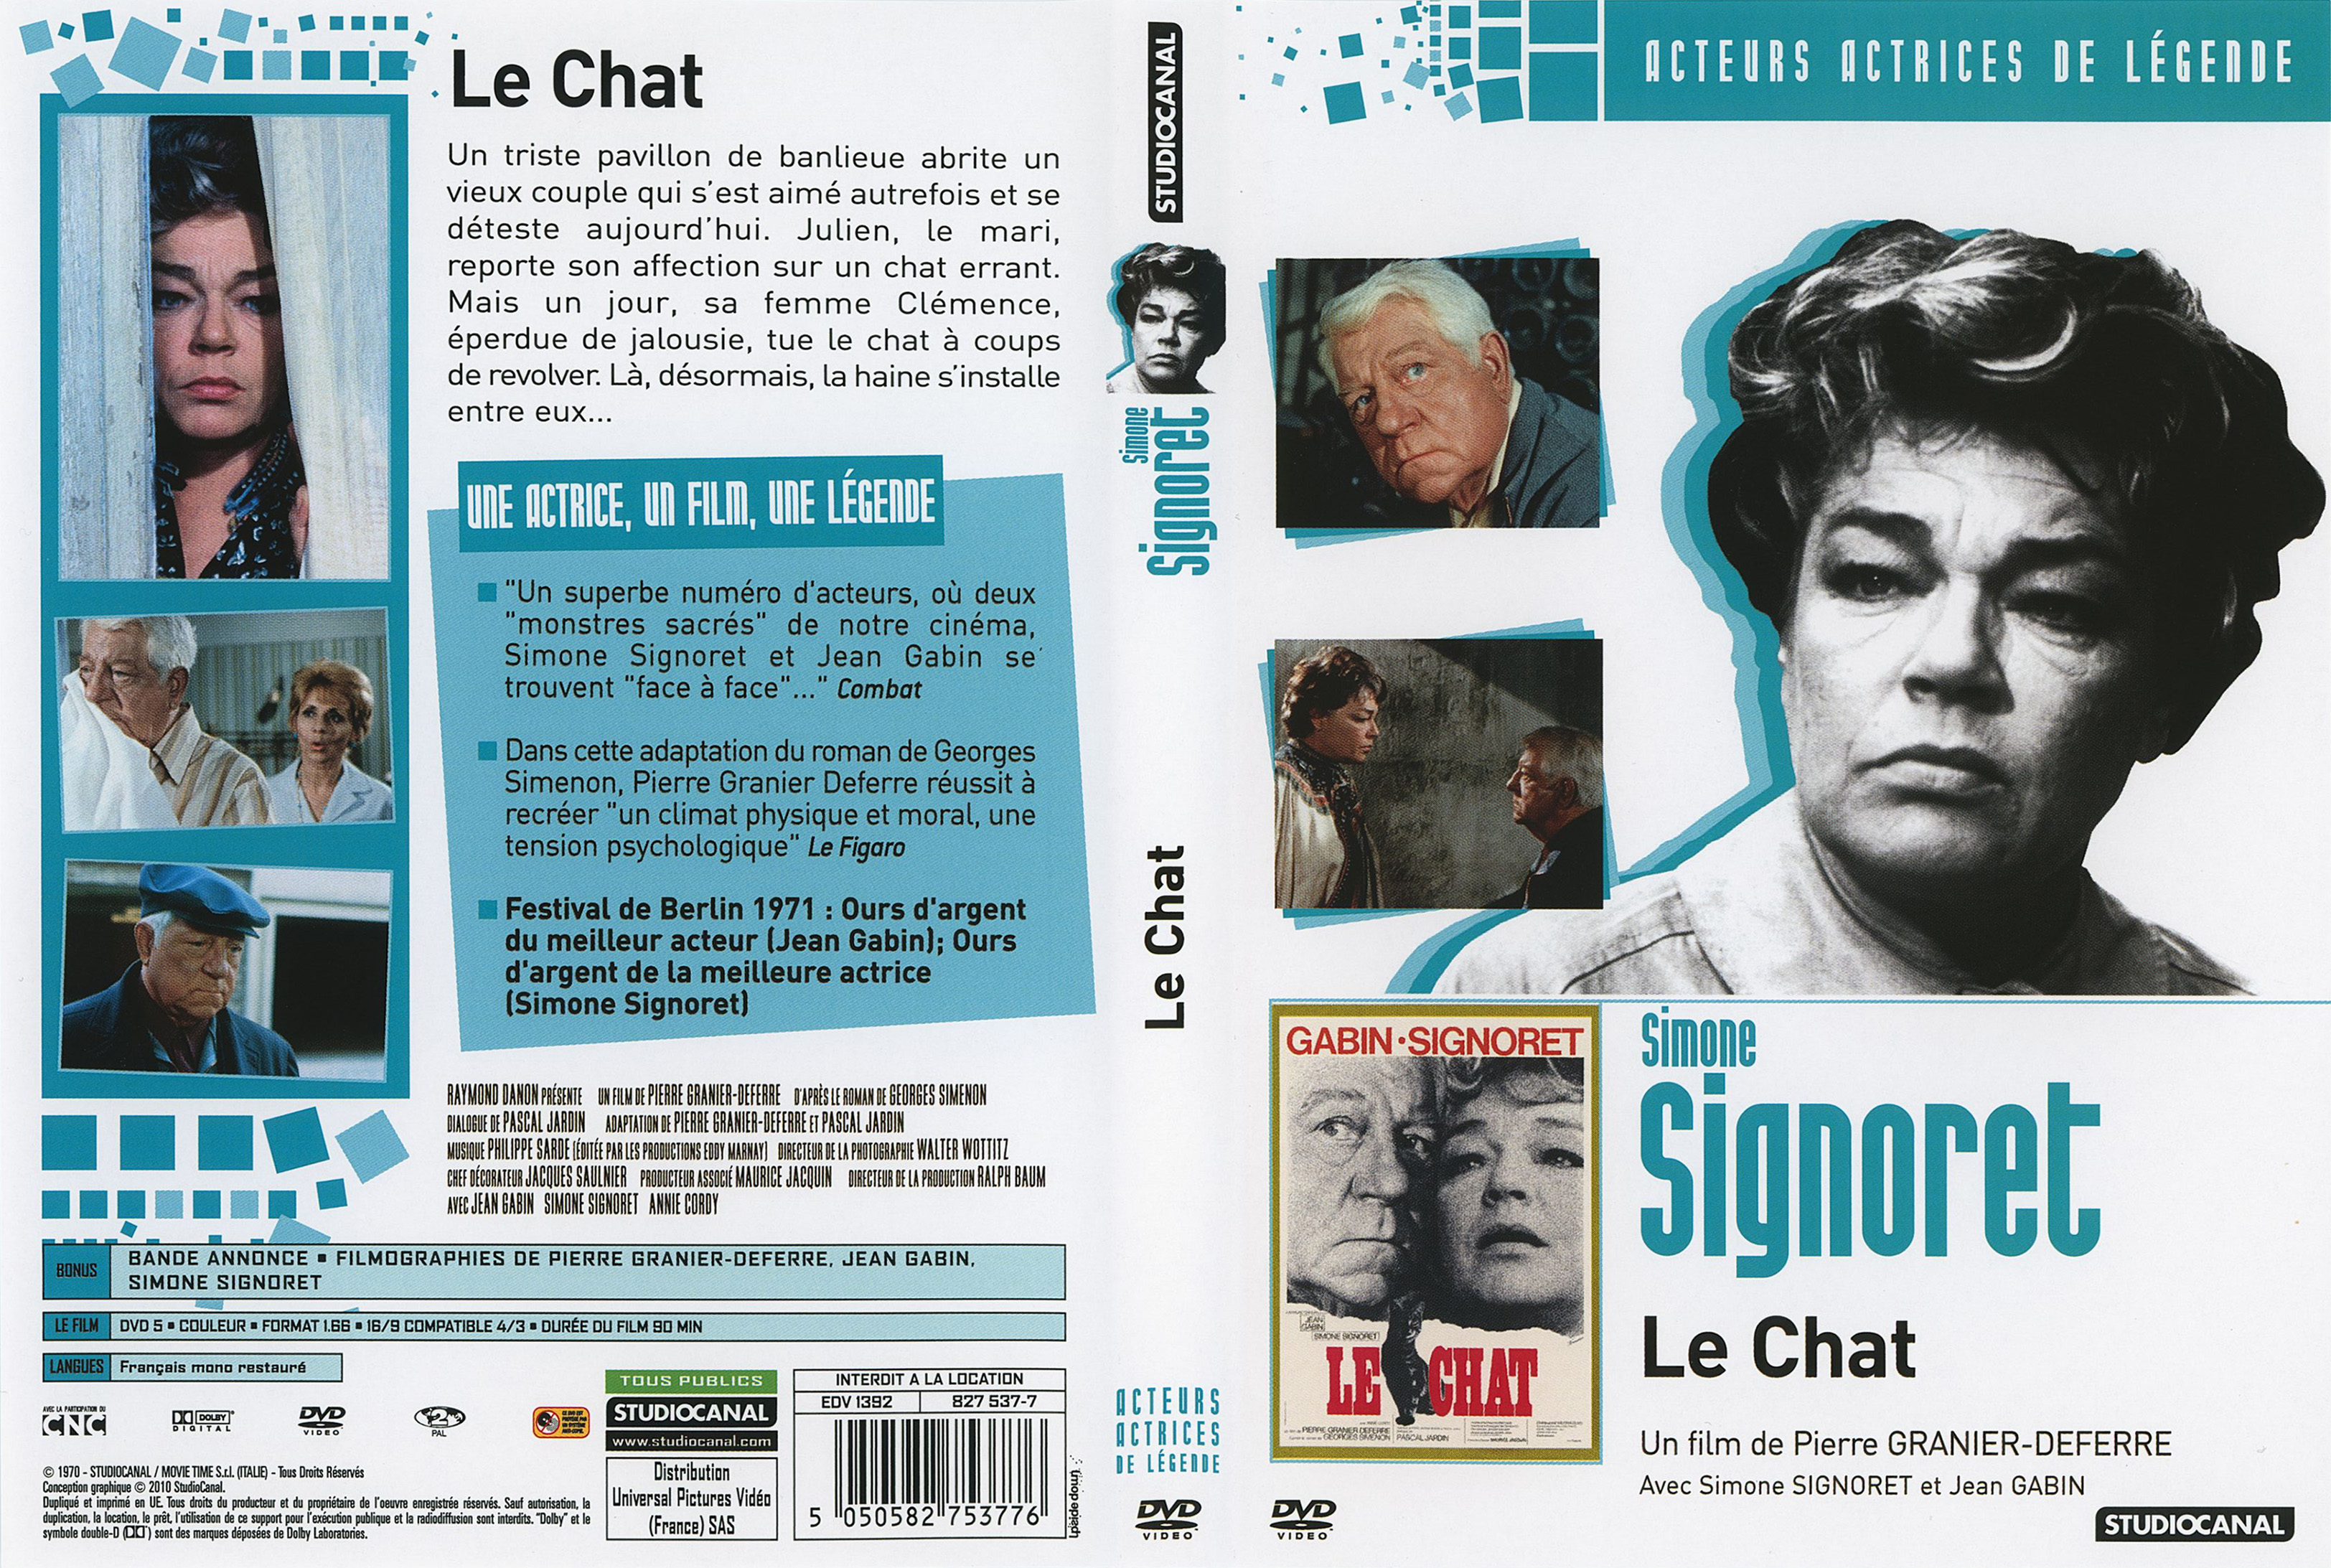 Jaquette DVD Le chat v3